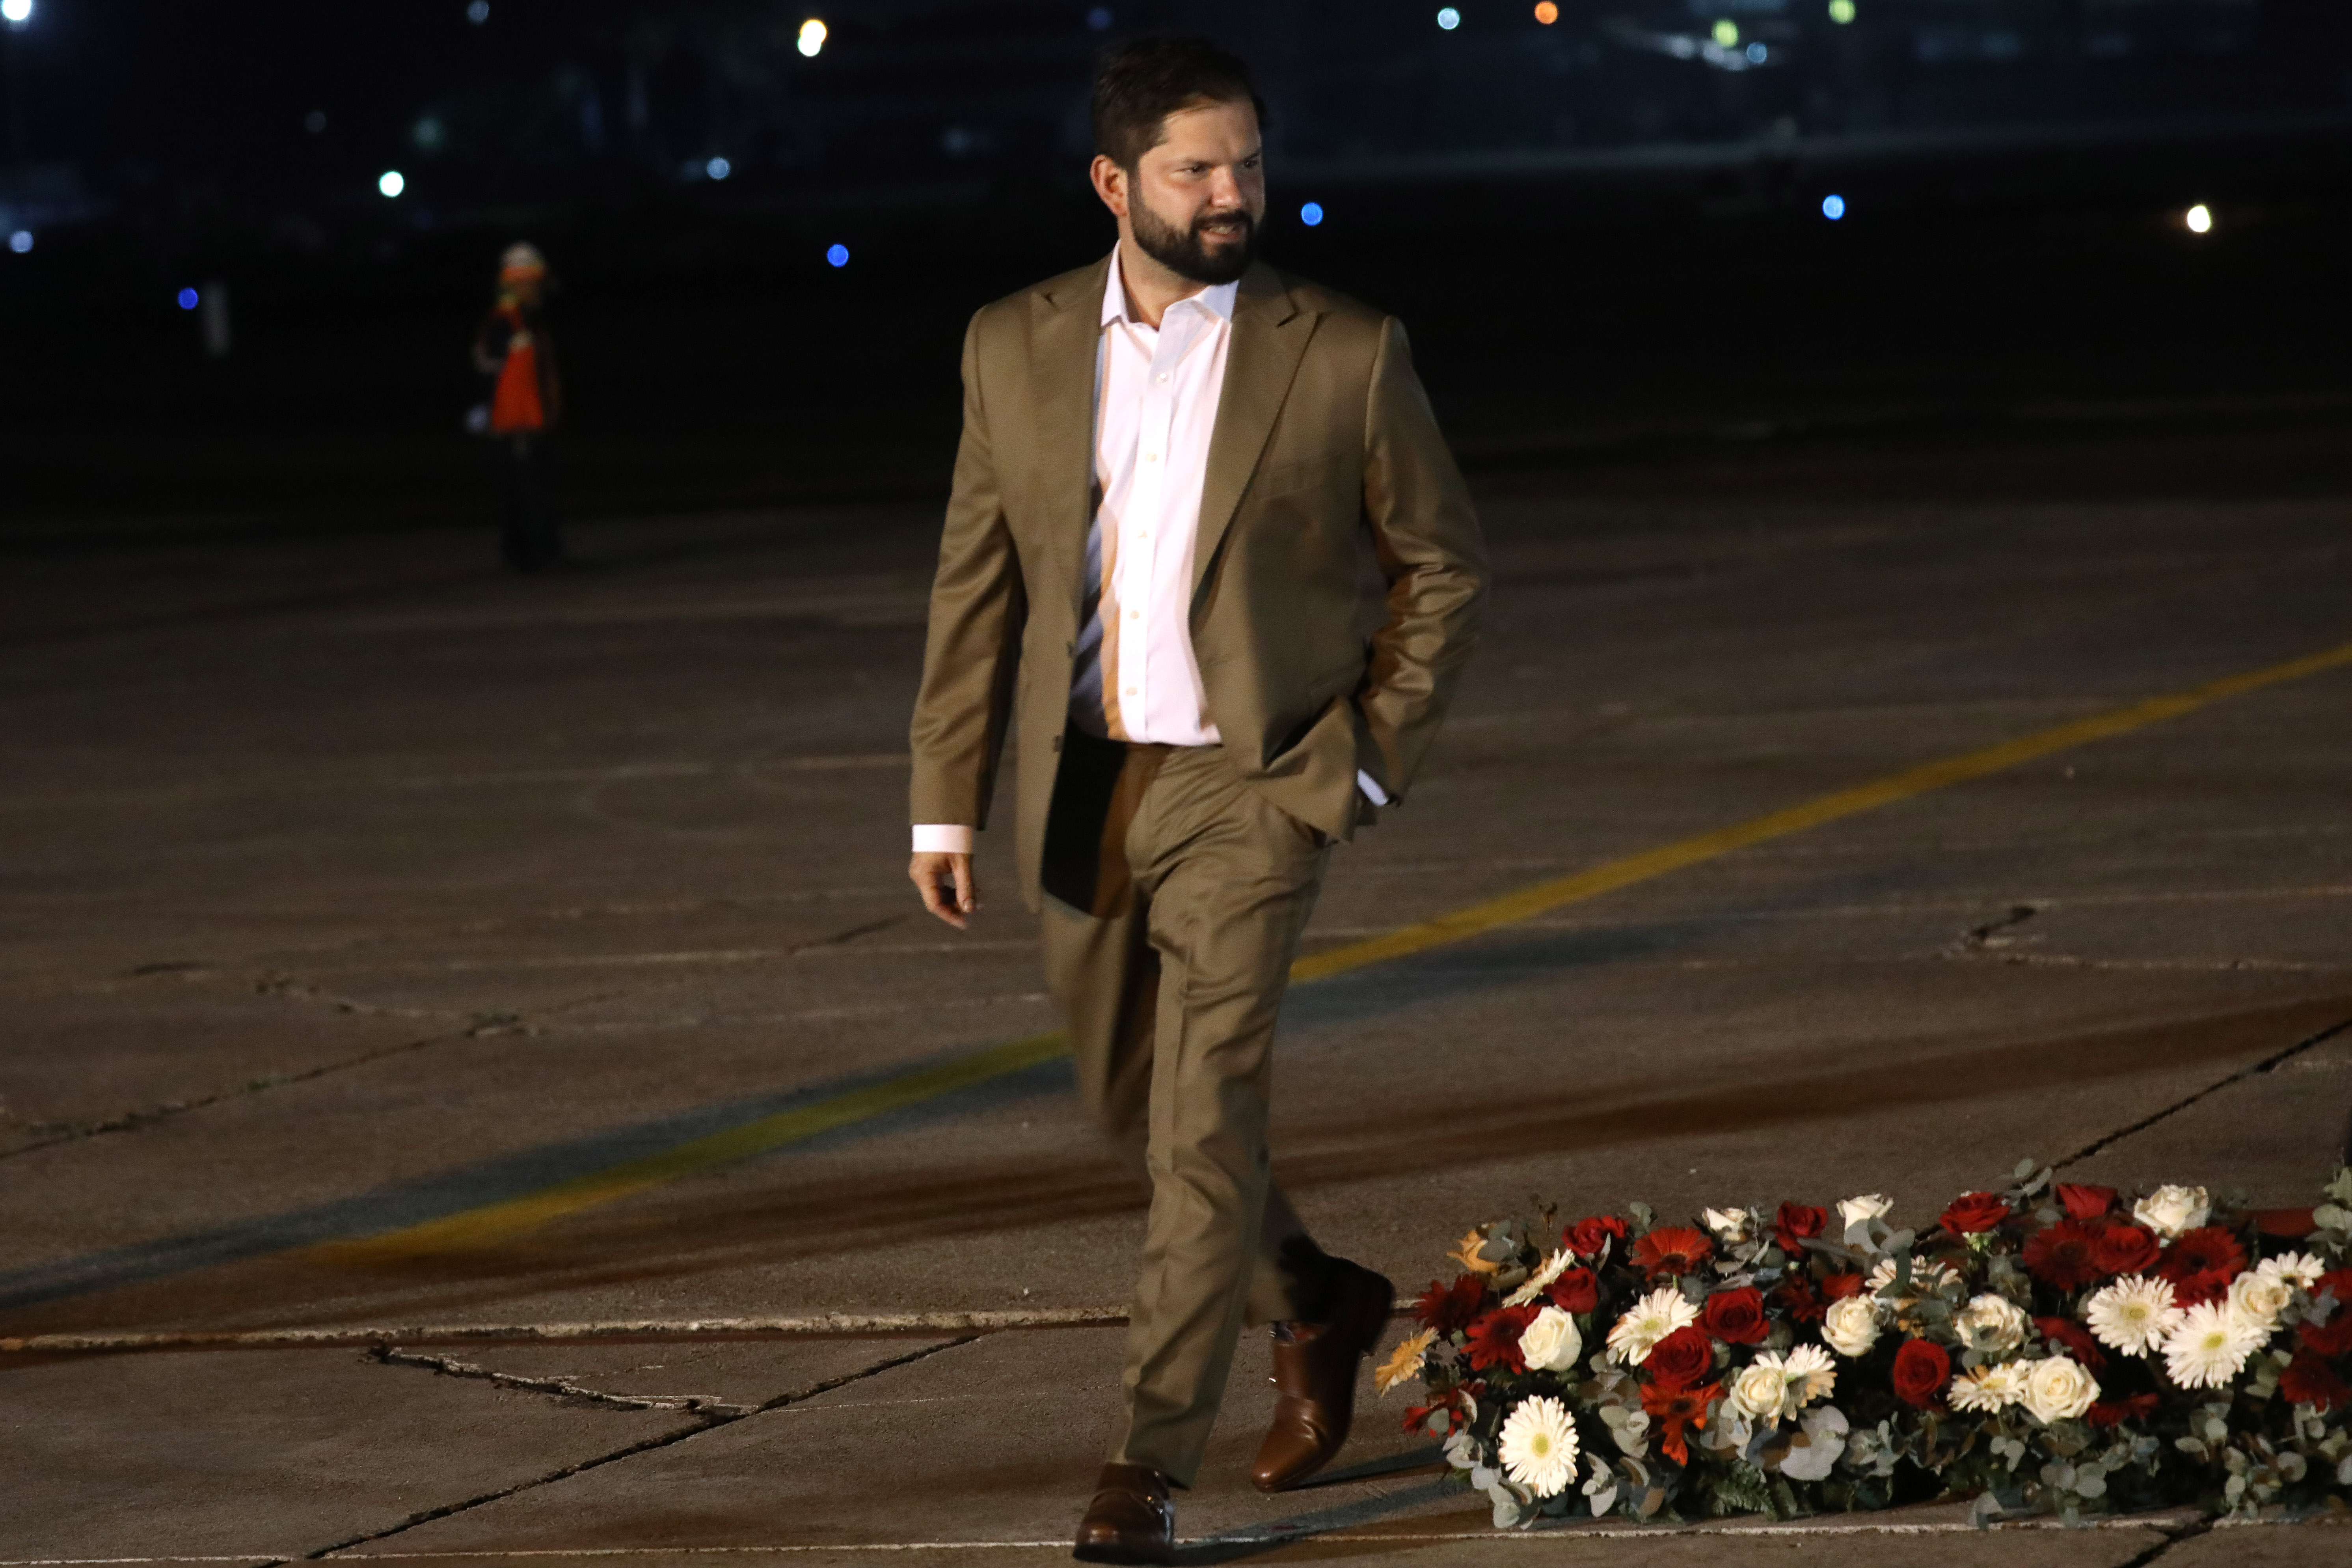 El Presidente de la Republica Gabriel Boric arriba al aeropuerto La Aurora en la ciudad de Guatemala.